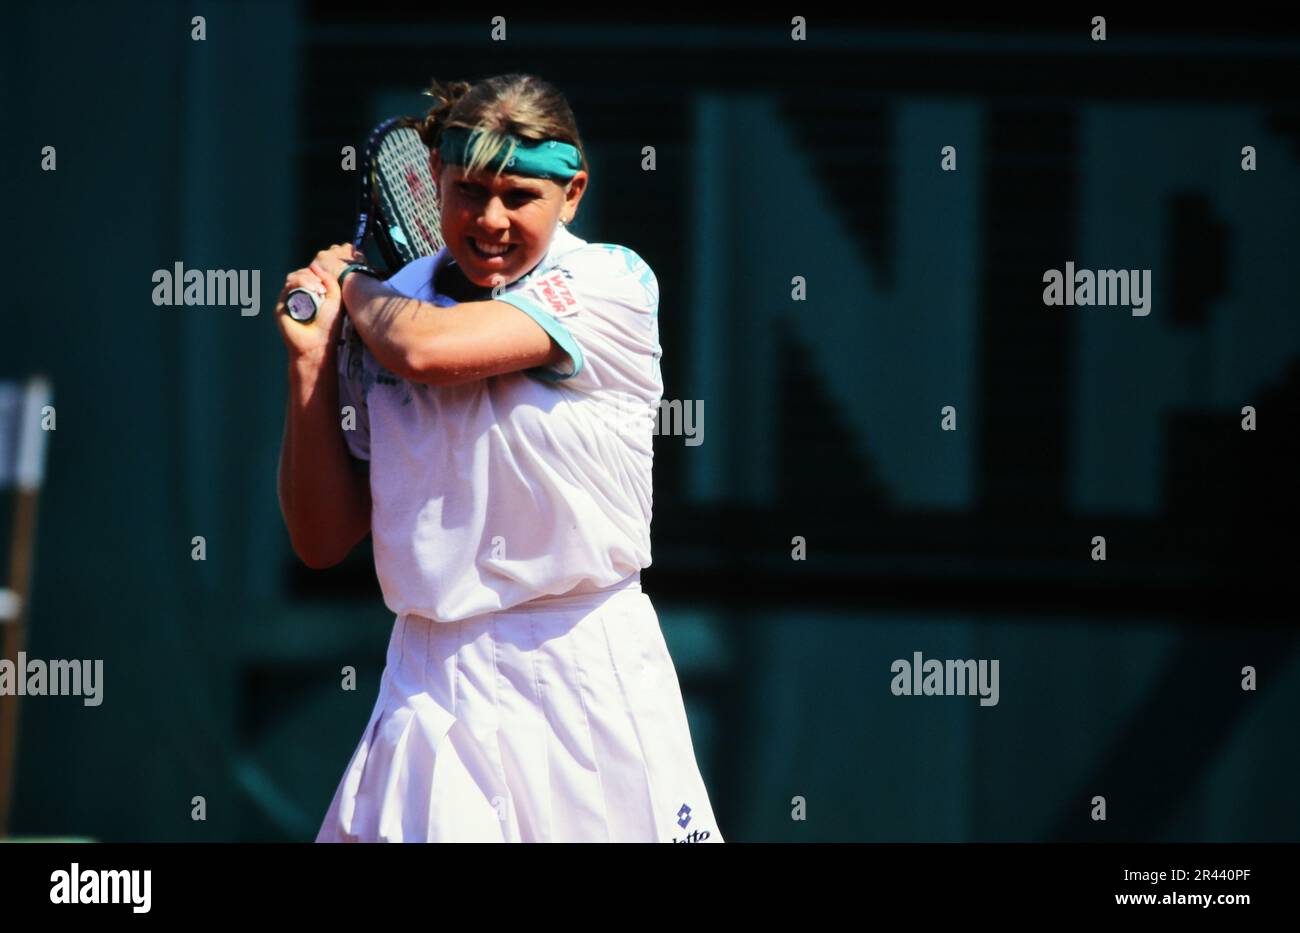 Anke Huber, deutsche Tennisspielerin, auf dem Tennisplatz in Aktion. Stockfoto